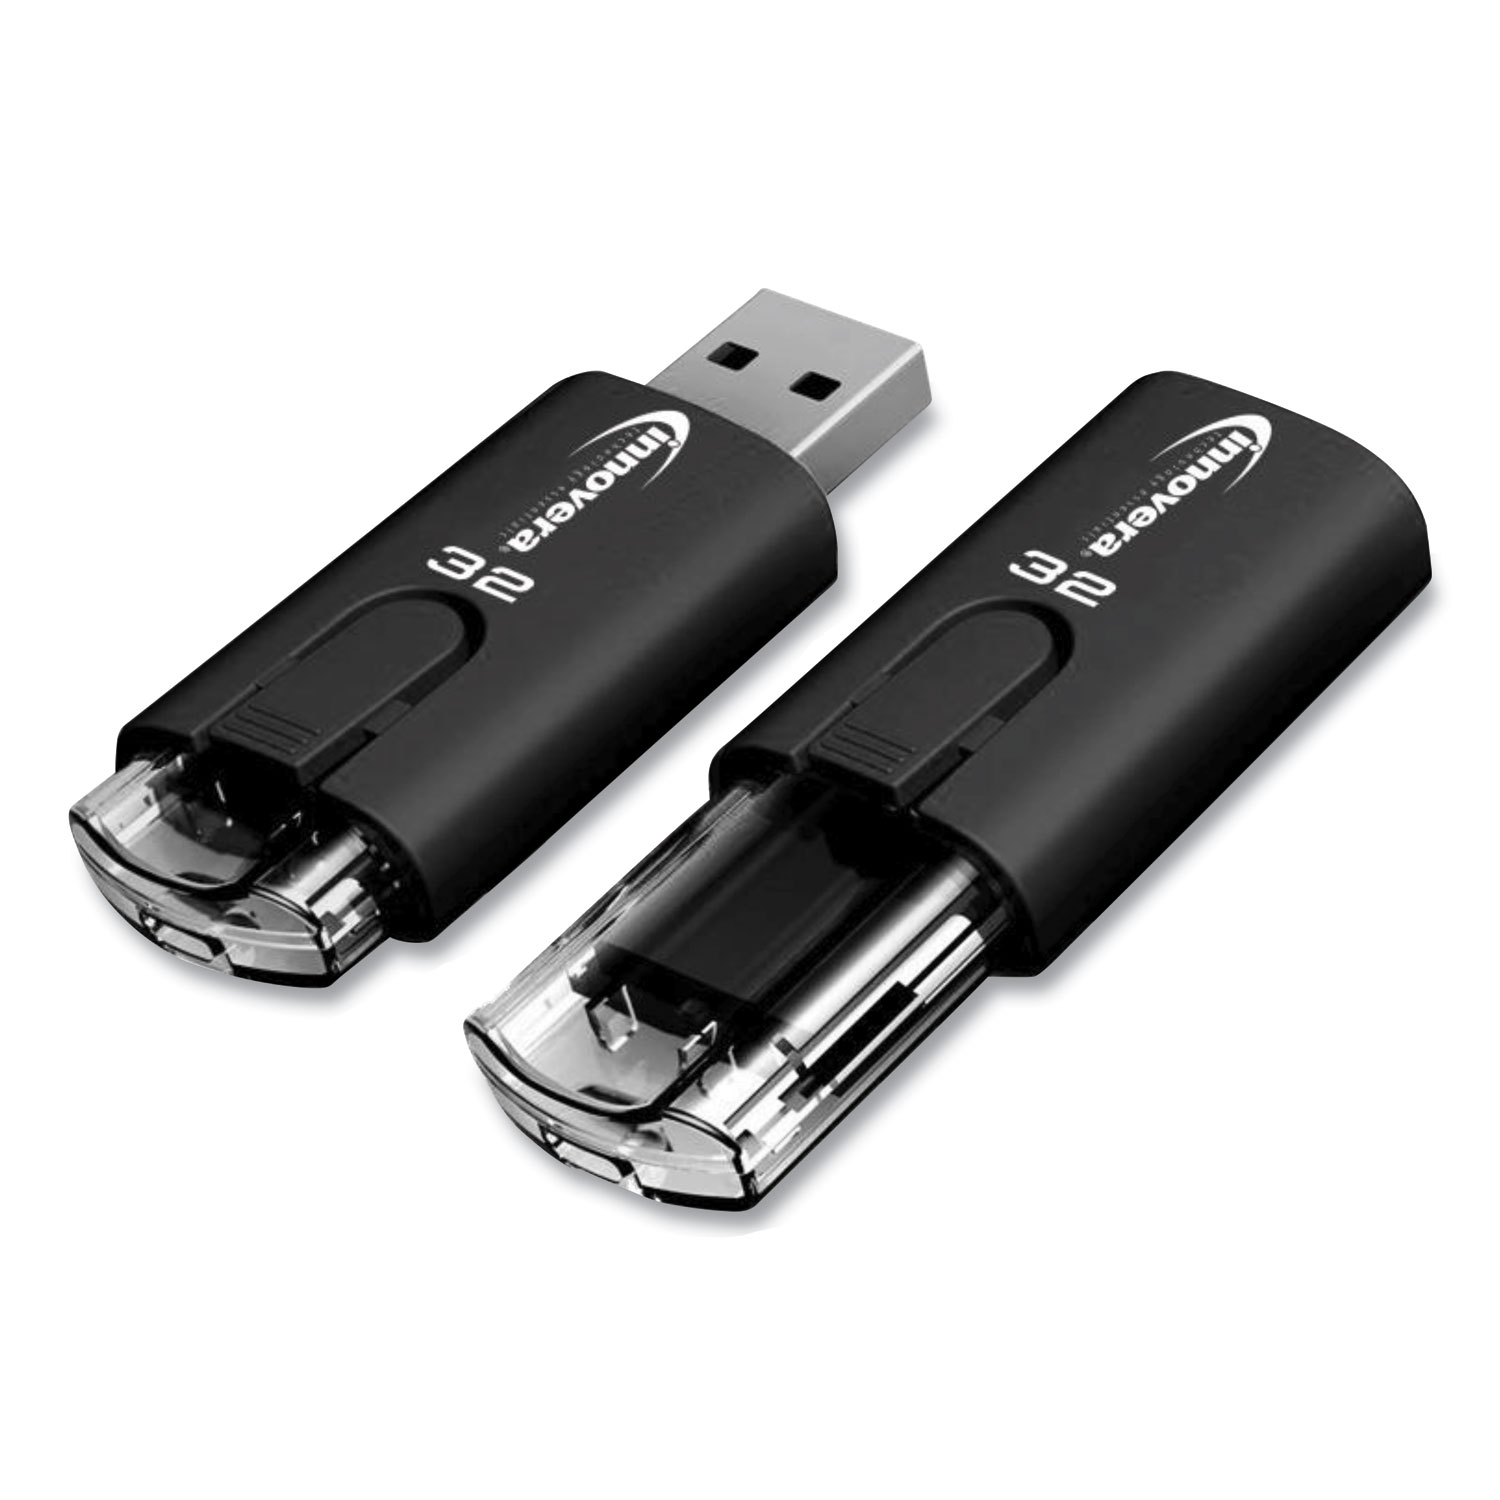  Innovera 82032 USB 3.0 Flash Drive, 32 GB, (IVR82032) 